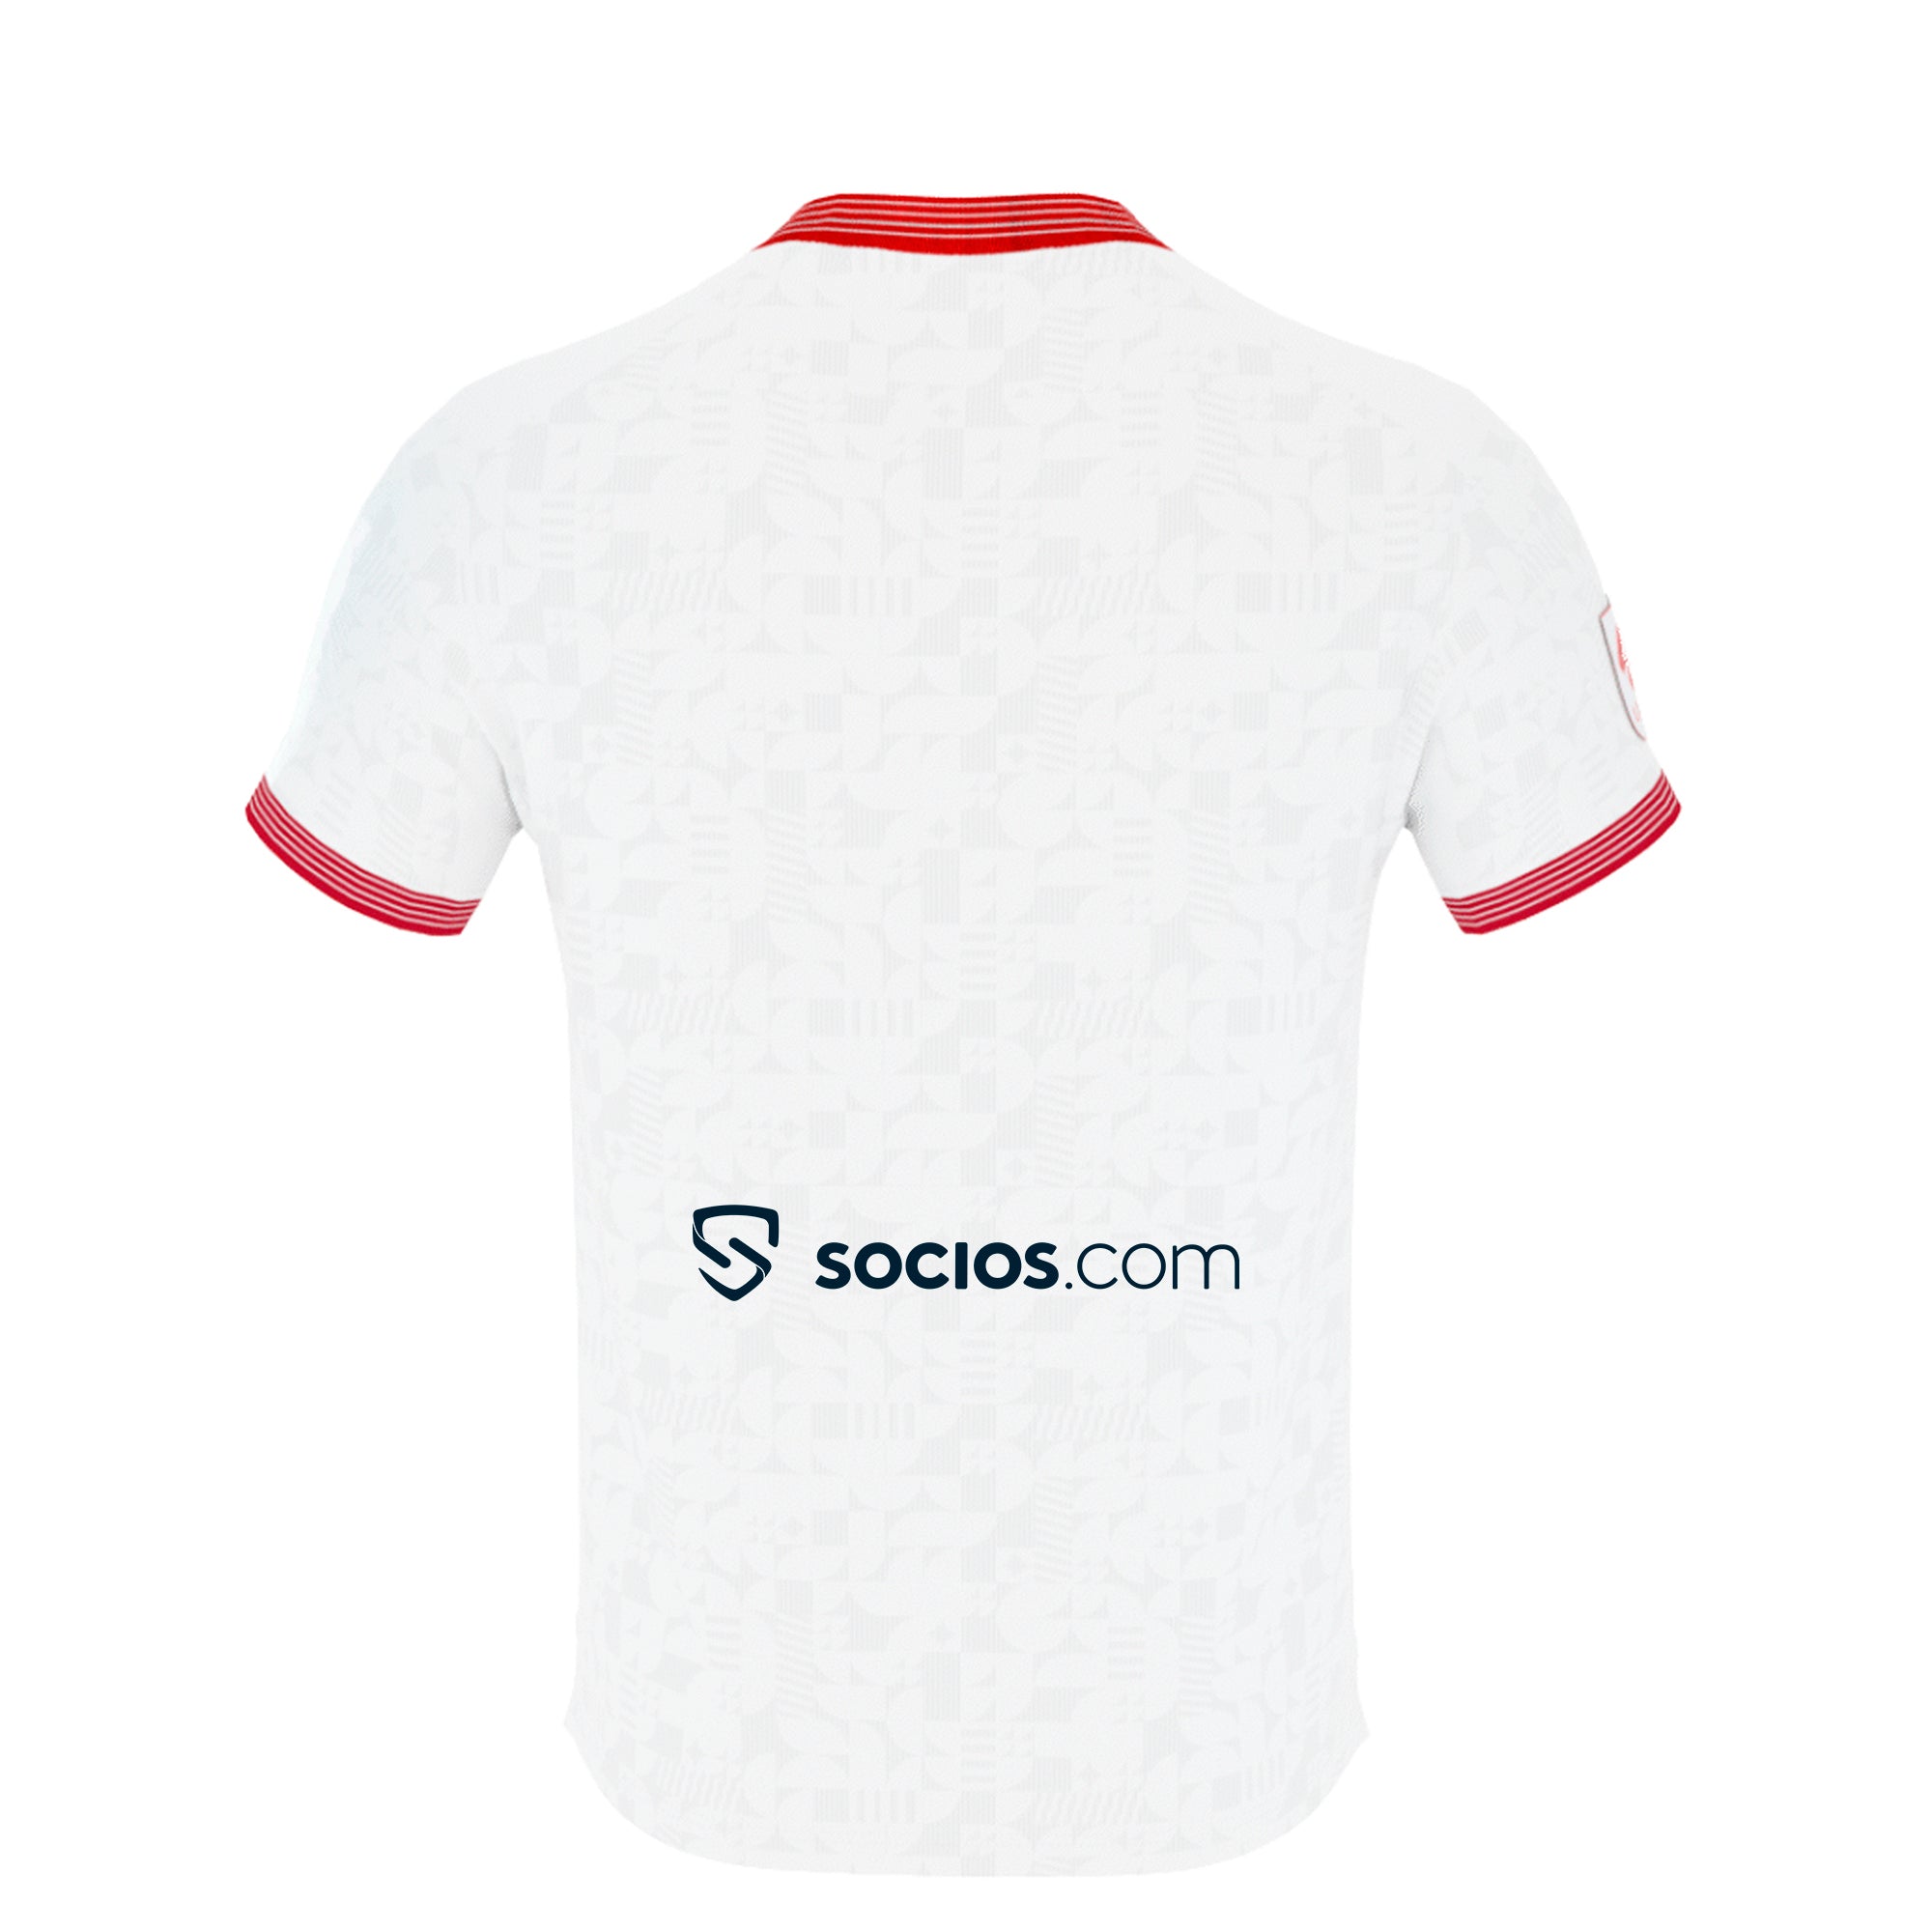 Tienda Oficial Sevilla Fútbol Club - ¡Jugaremos en Praga con